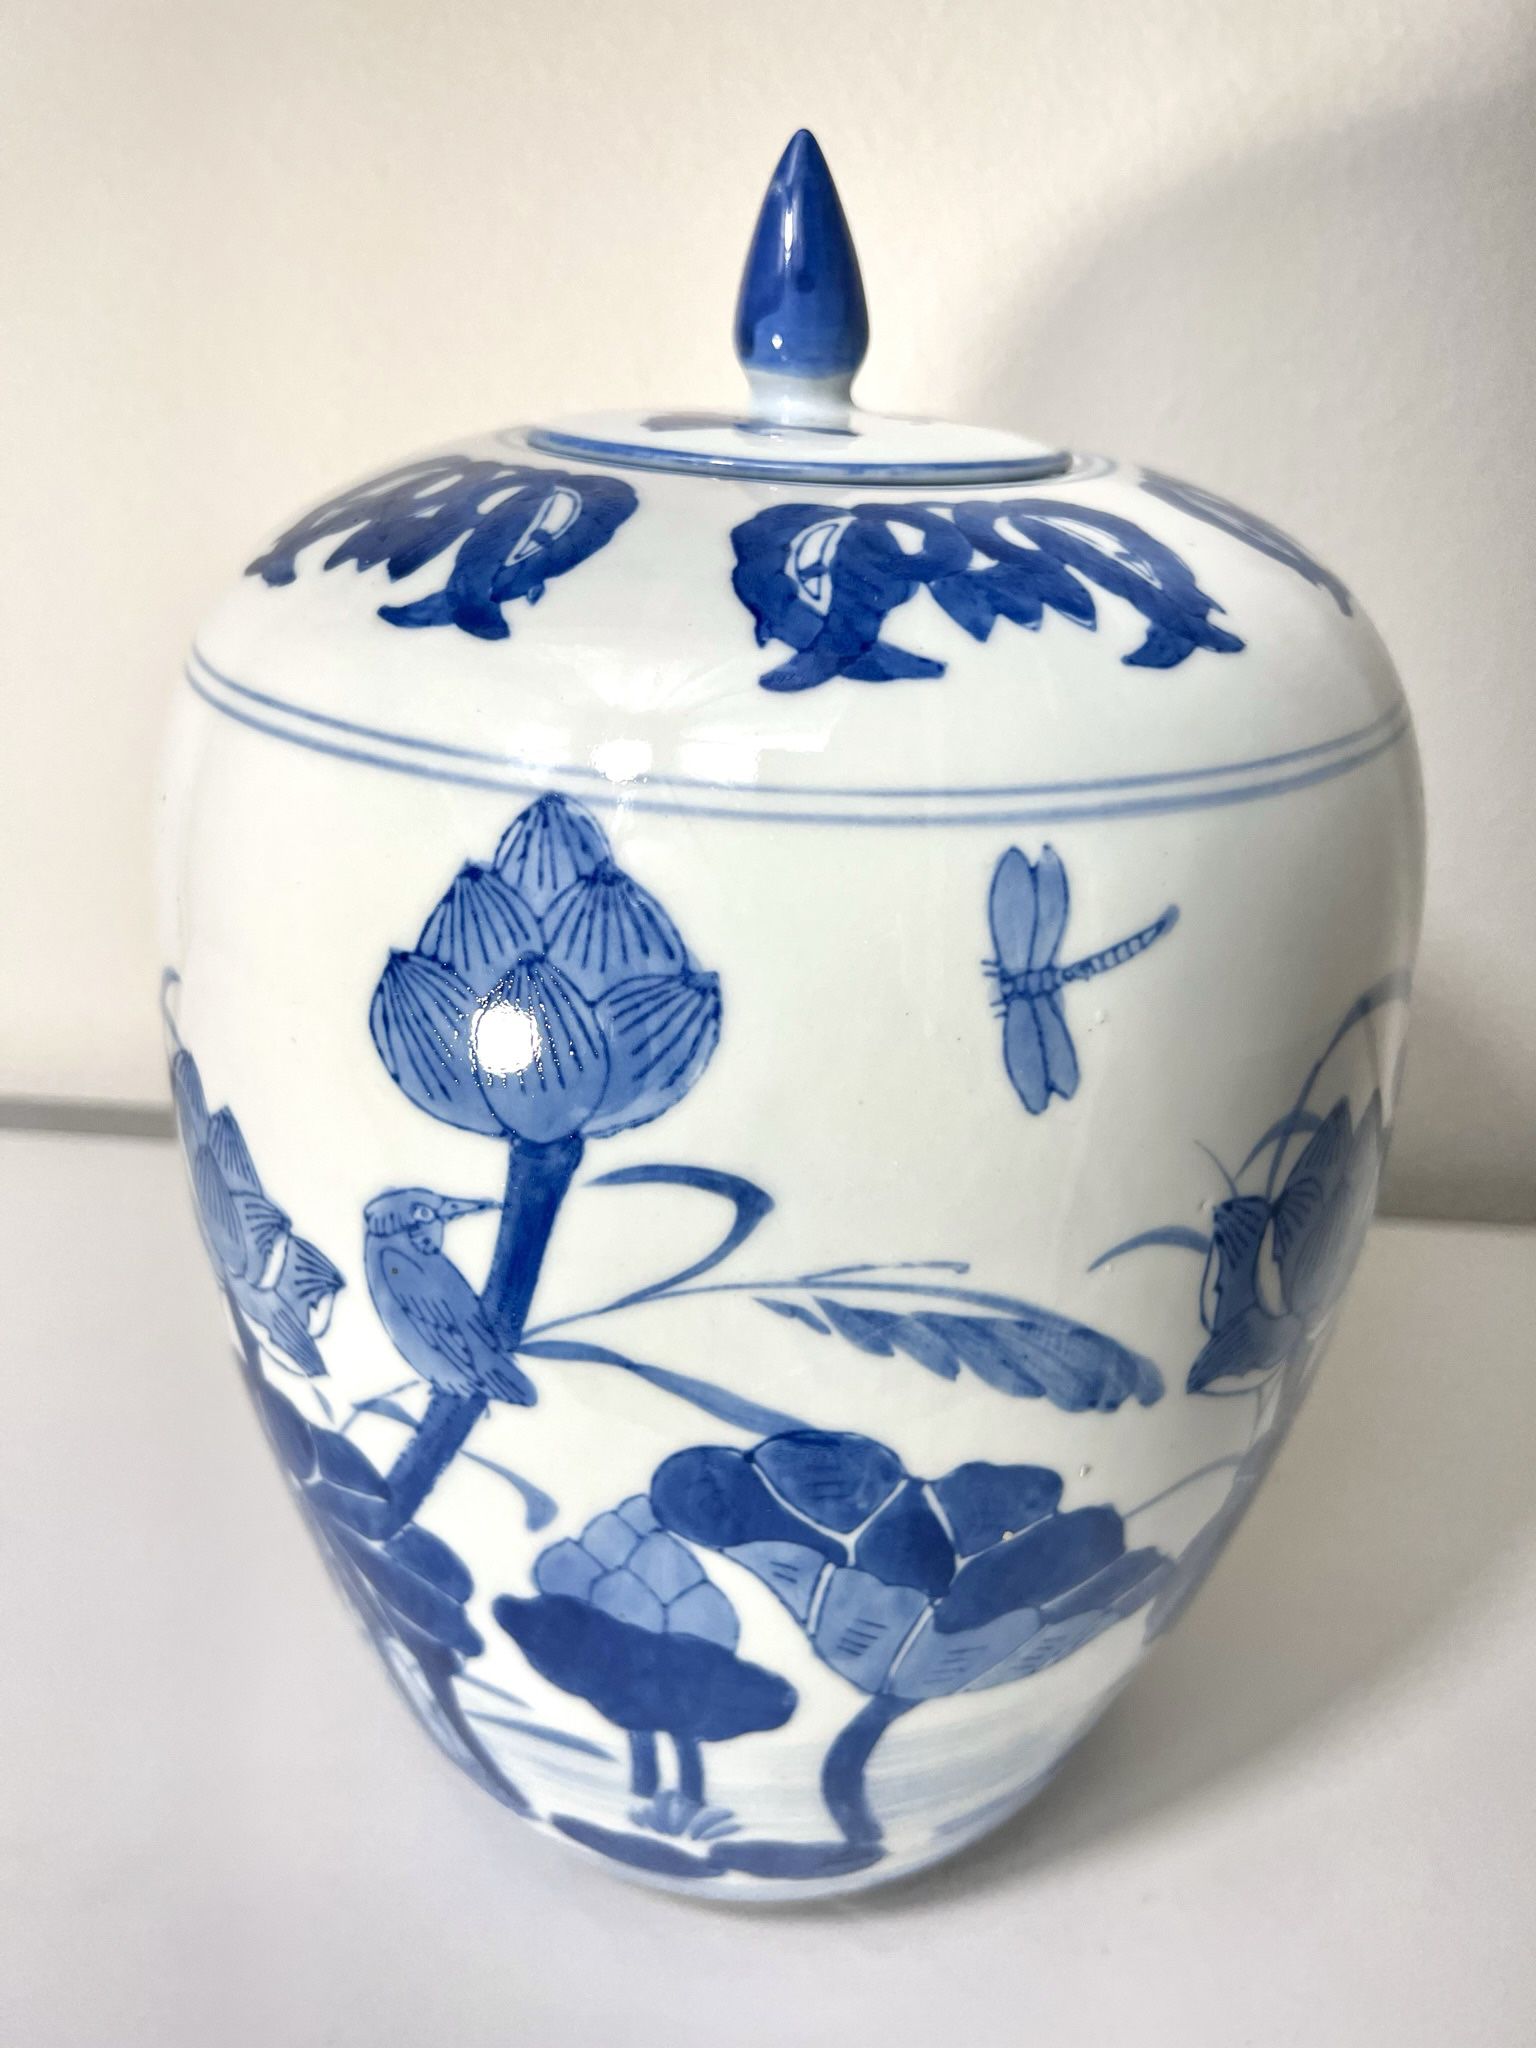 Vintage Large 12" Chinese Blue And White Porcelain Ginger Jar Vase